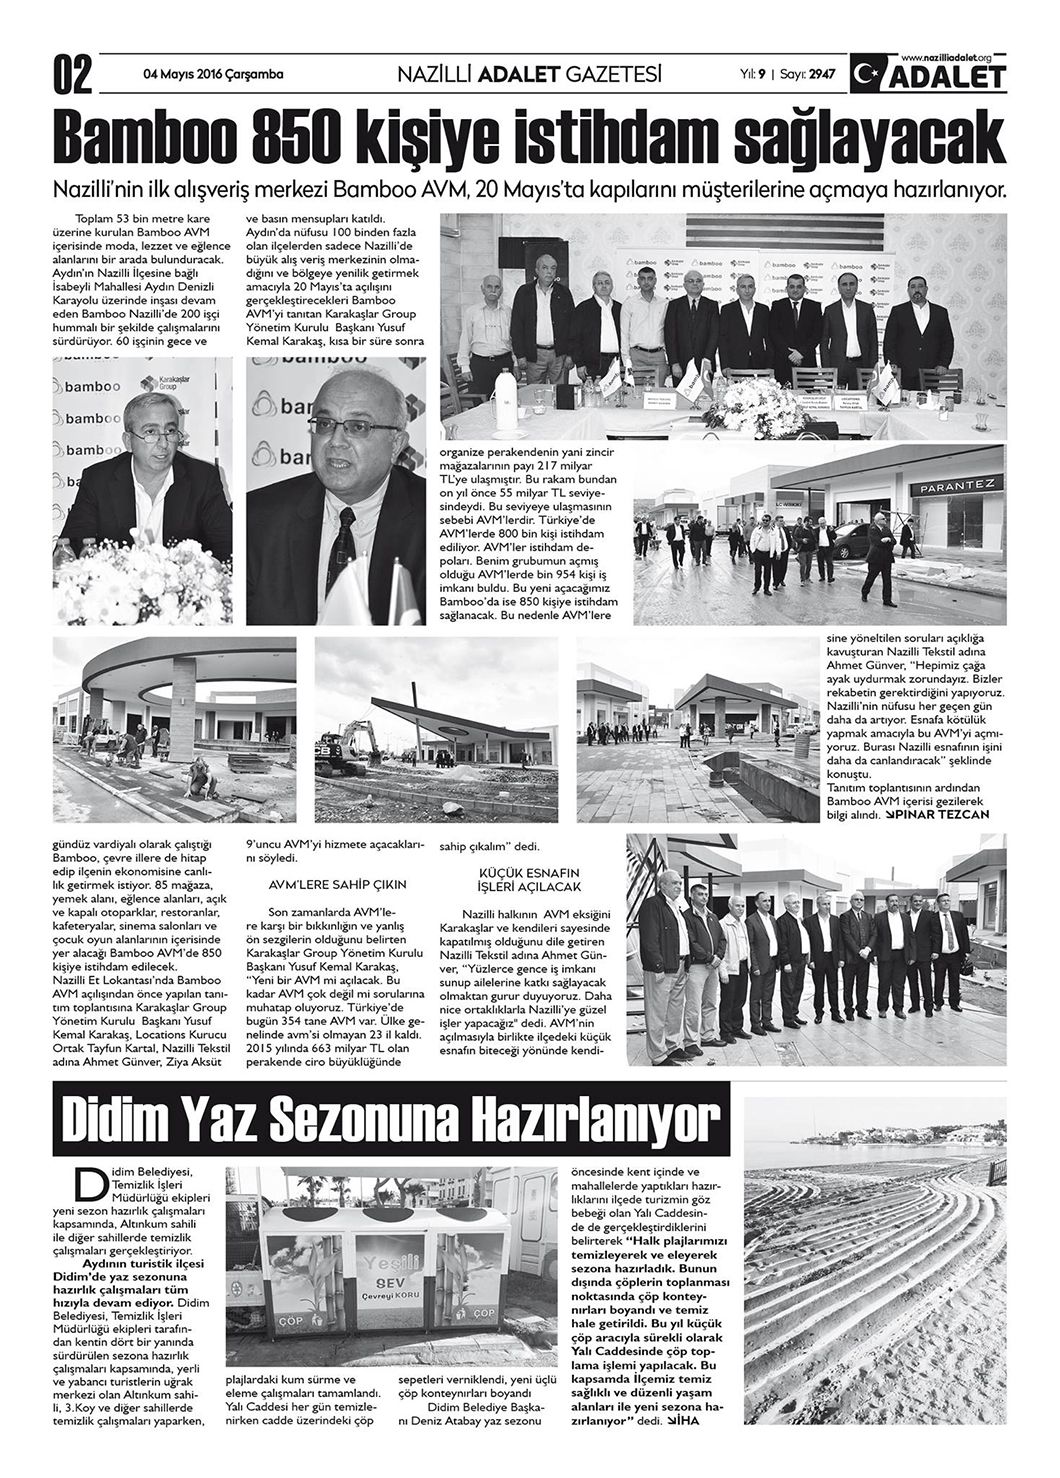 Nazilli Adalet Gazetesi / 4 Mayıs 2016